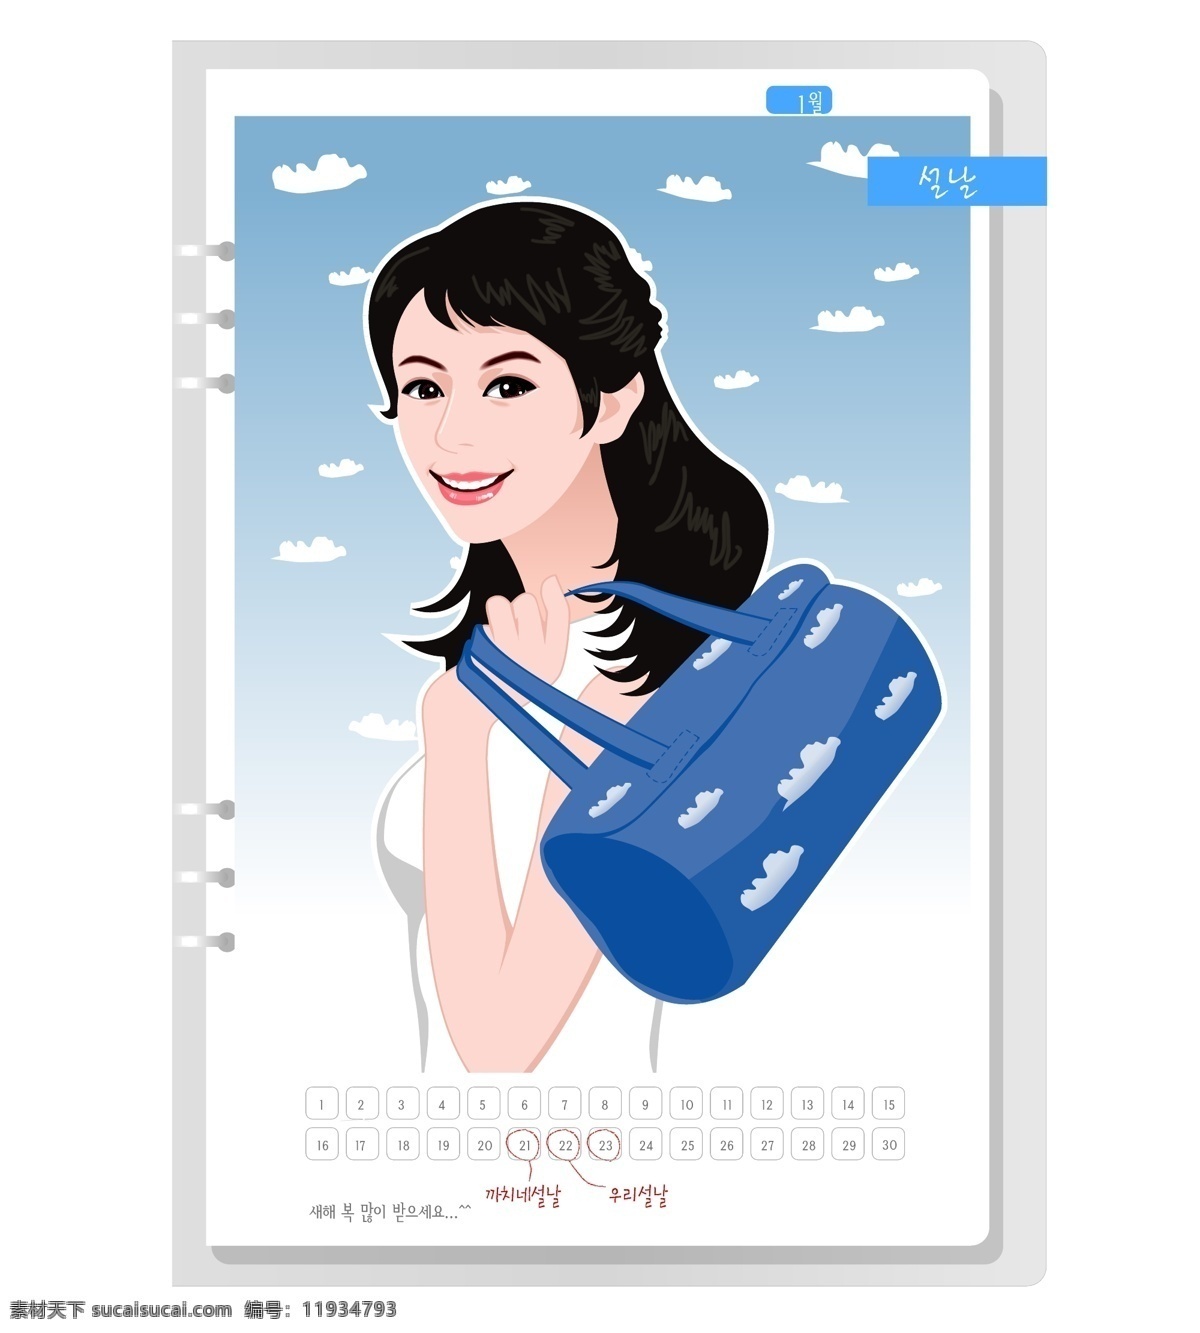 韩国 女生 月历 卡 矢量图